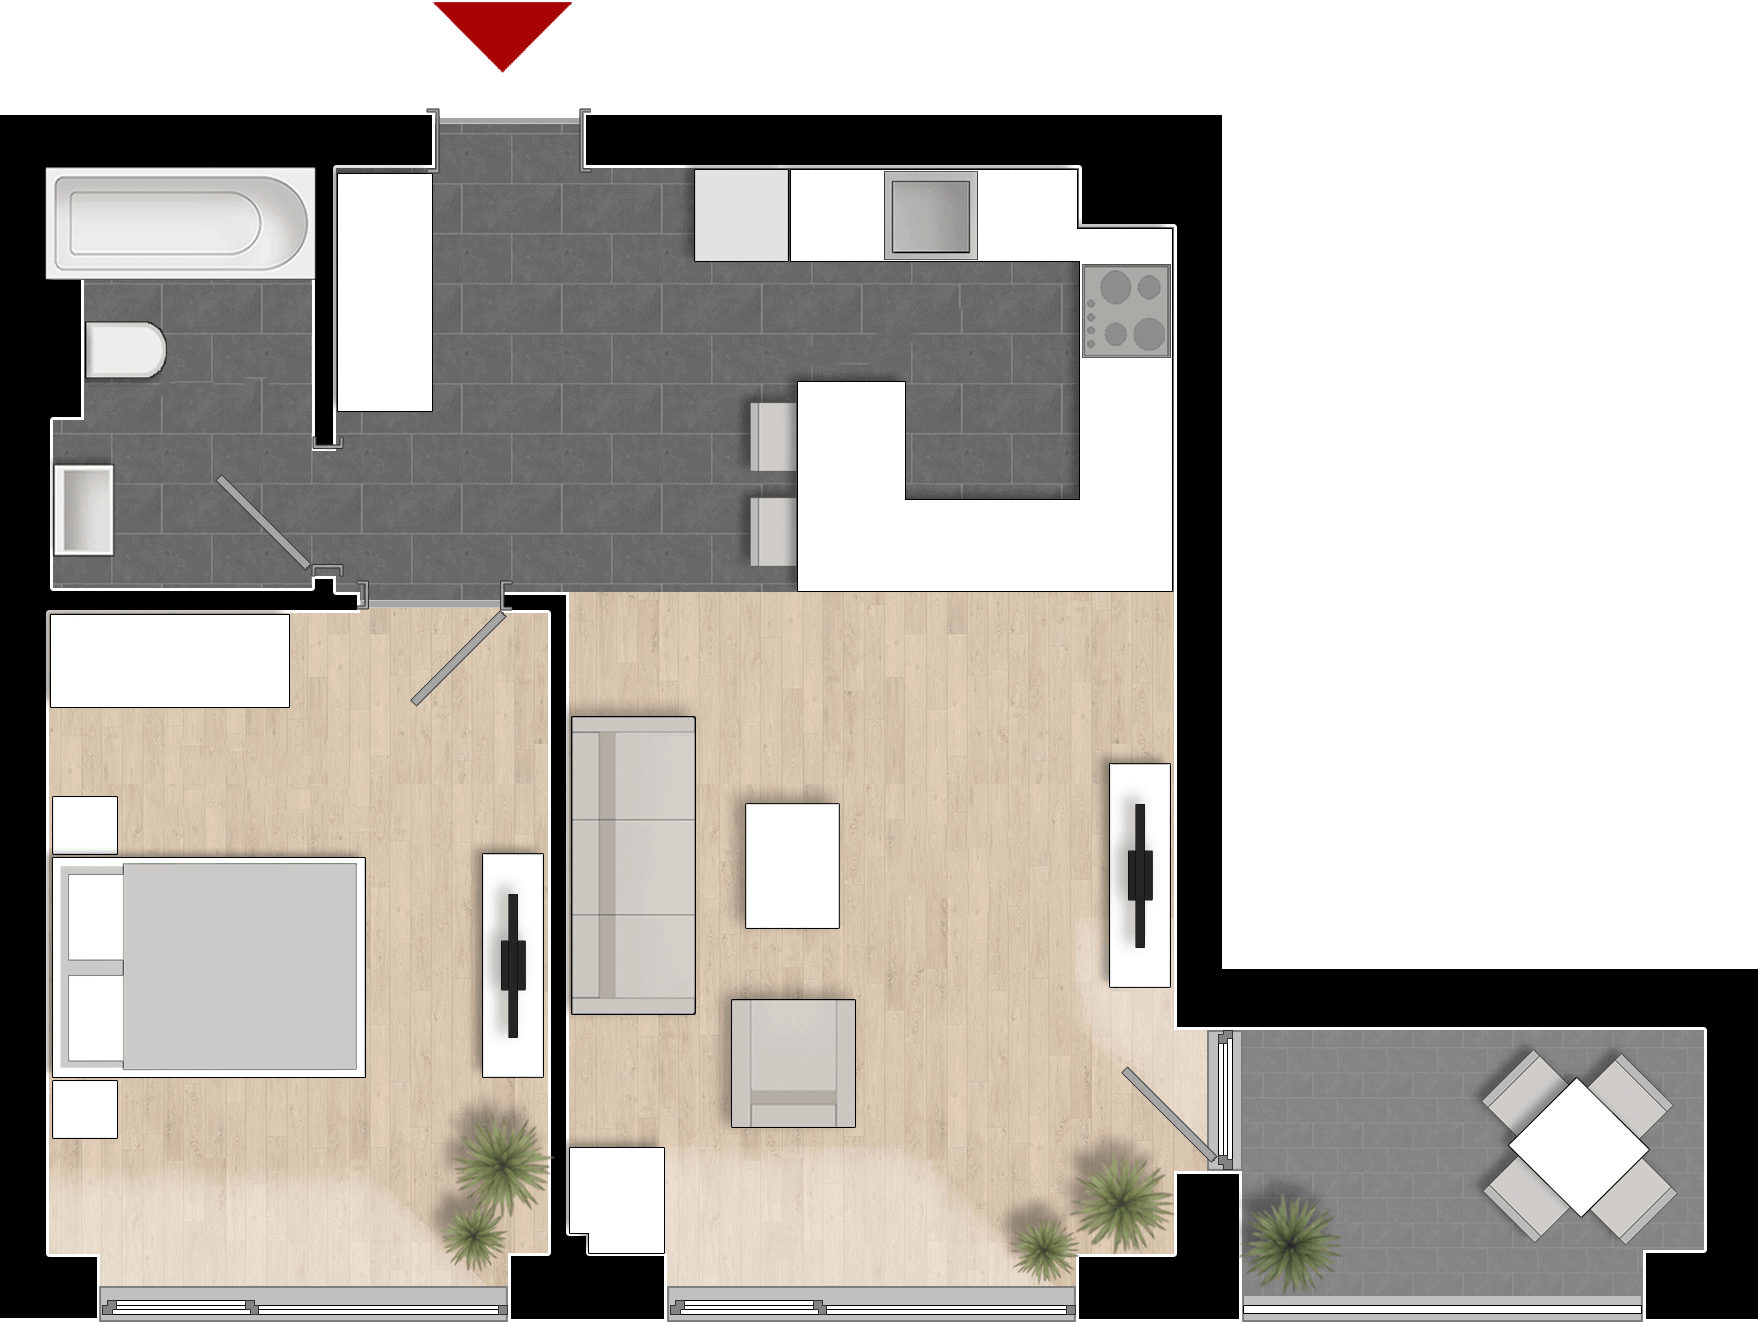  Apartament 501, Tip de apartament 1A cu 2 camere 